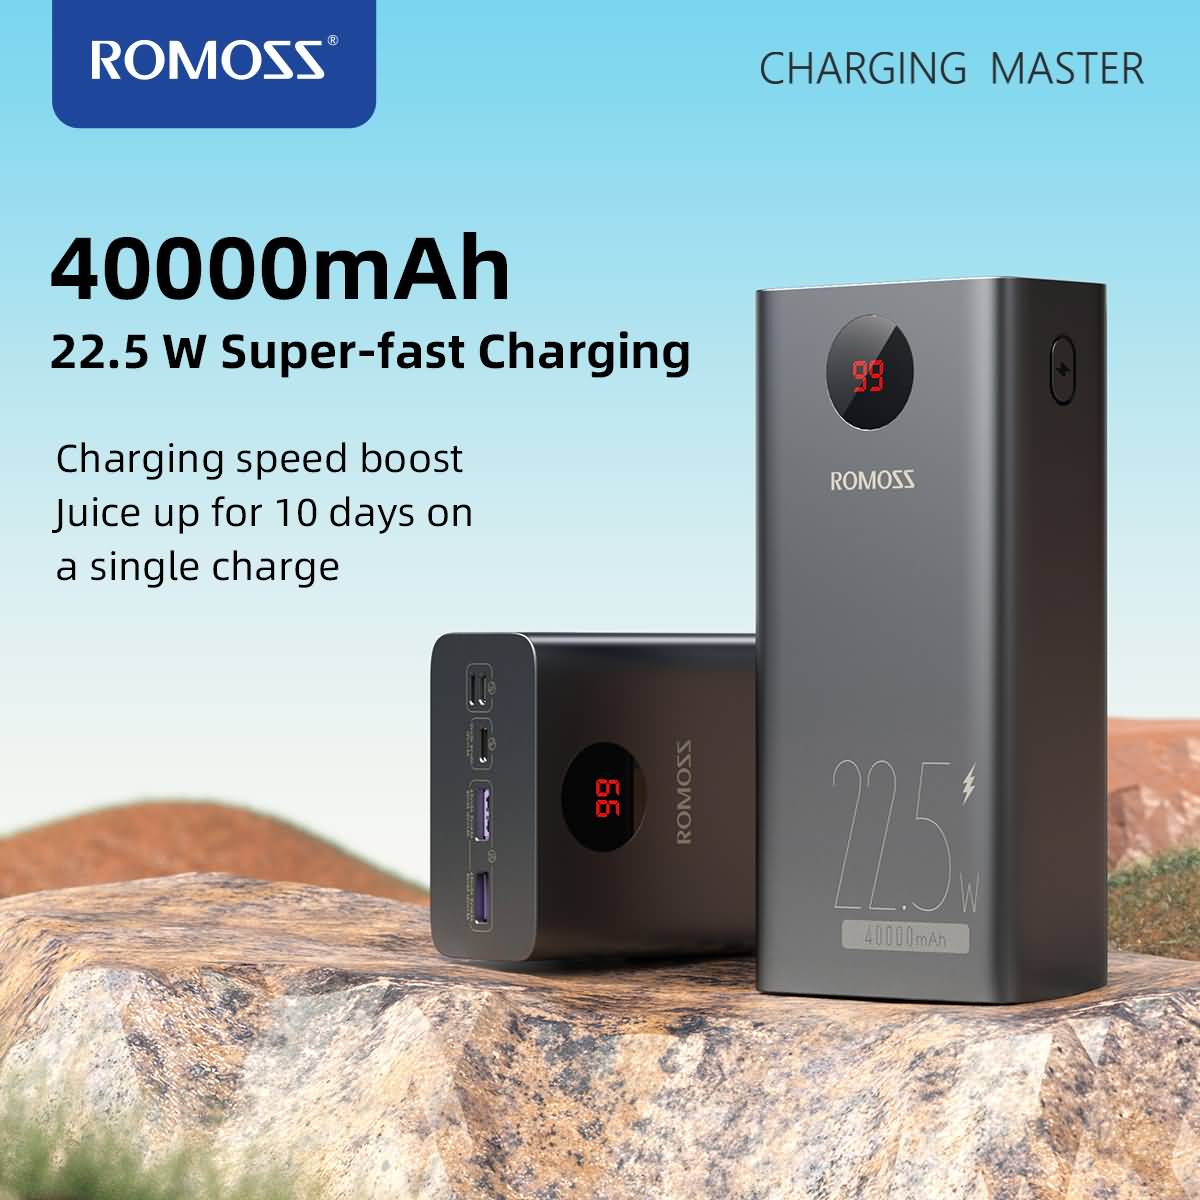 ROMOSS – 65W batterie externe 65W Power Bank 40000mAh, charge rapide,  chargeur Portable USB C, pour ordinateur Portable, iPhone 14 plus,xiaomi